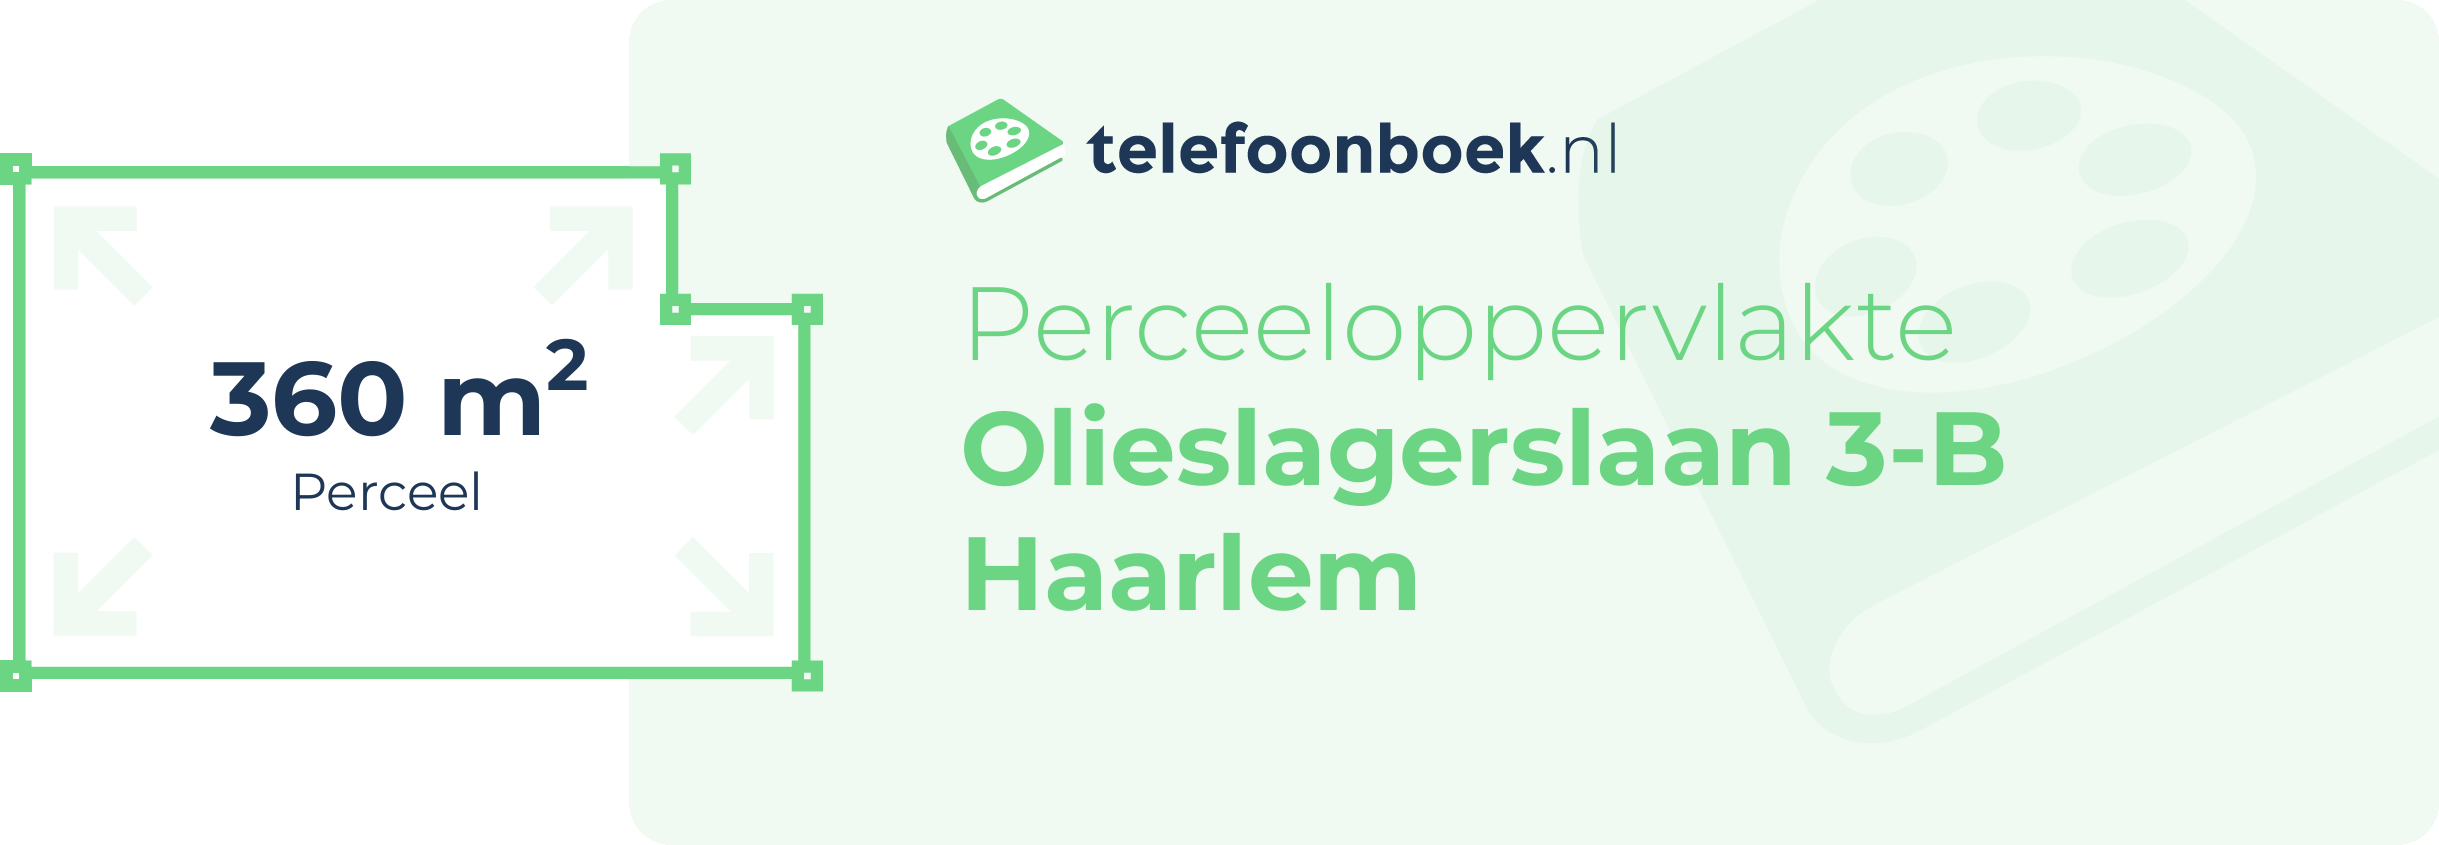 Perceeloppervlakte Olieslagerslaan 3-B Haarlem